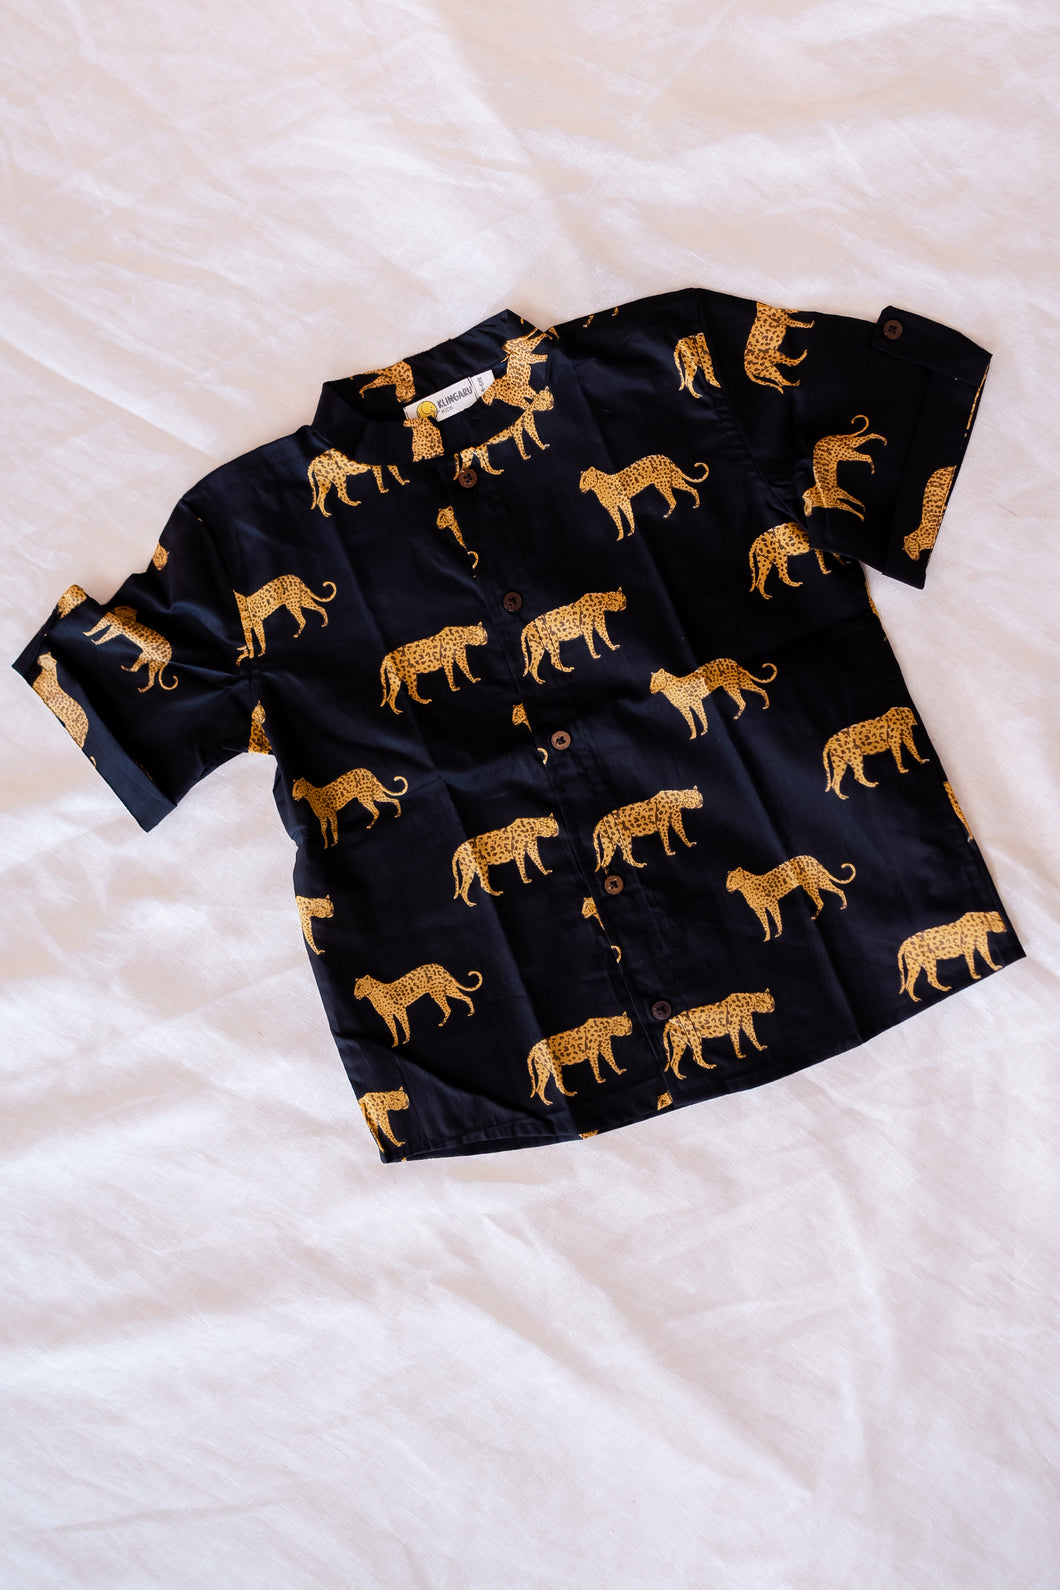 Klingaru Shirt - Black Cheetah